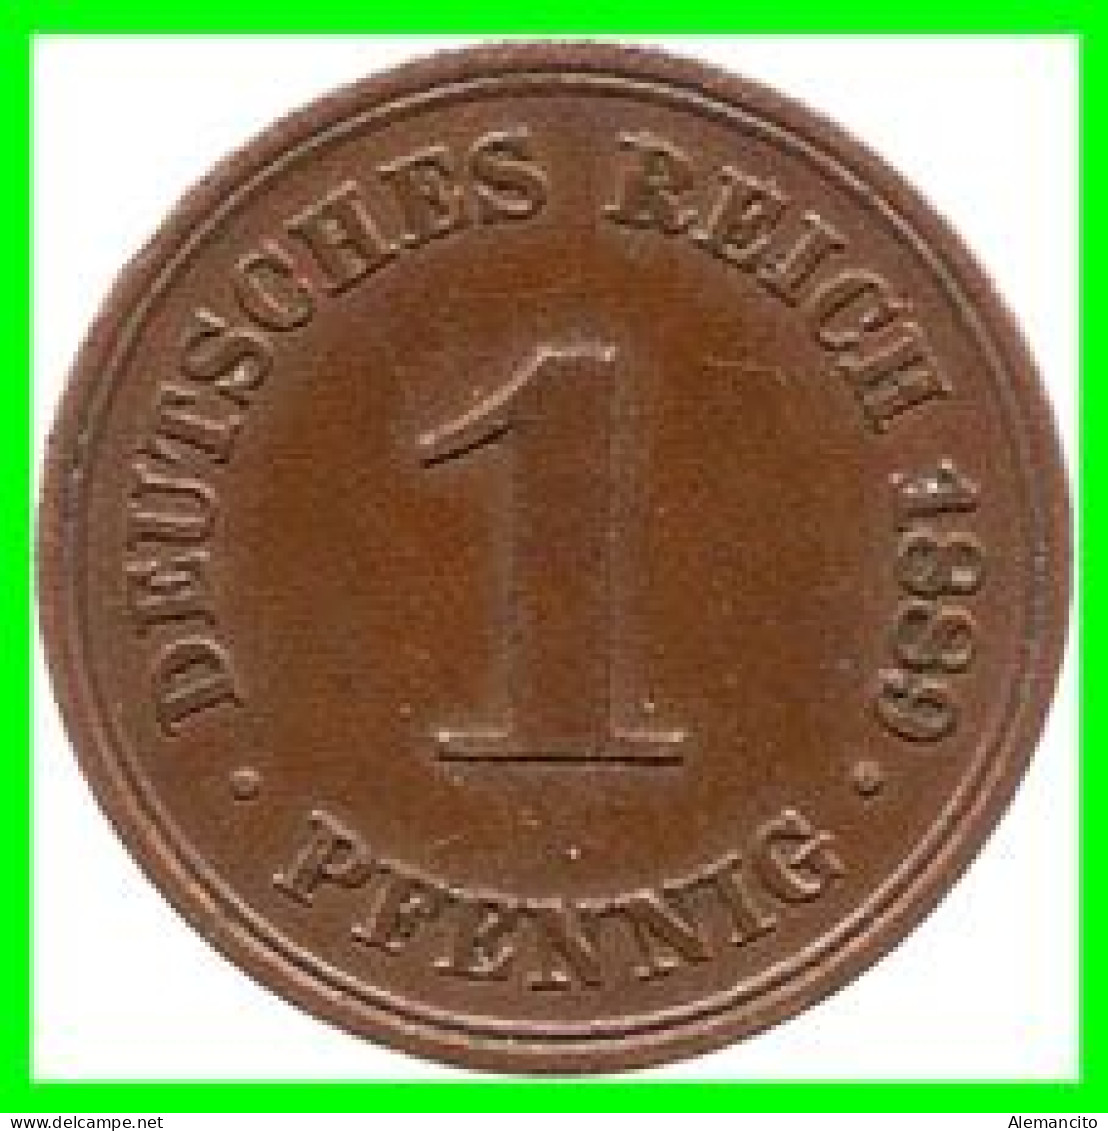 ALEMANIA – GERMANY - IMPERIO MONEDA DE COBRE DIAMETRO 17.5 Mm. DEL AÑO 1889 – CECA-A- KM-1  GOBERNANTE: GUILLERMO I - 1 Pfennig